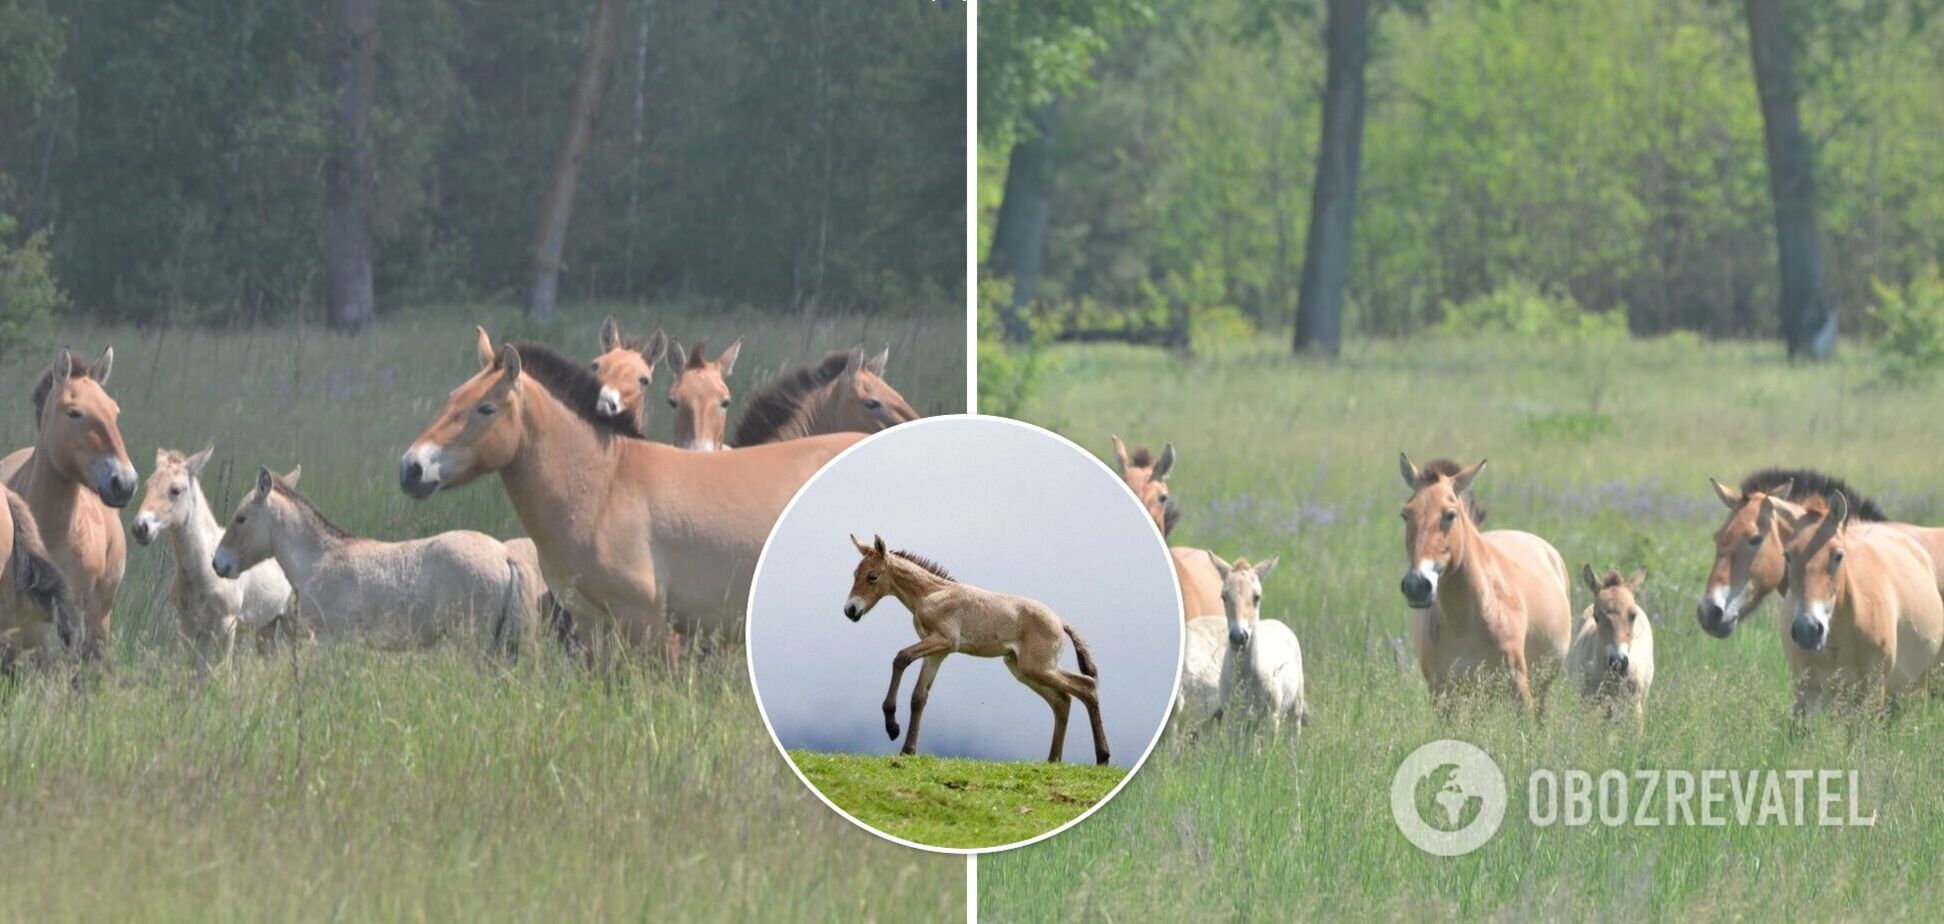 В Чернобыле исчезающие лошади Пржевальского родили потомство. Фото молодых жеребят